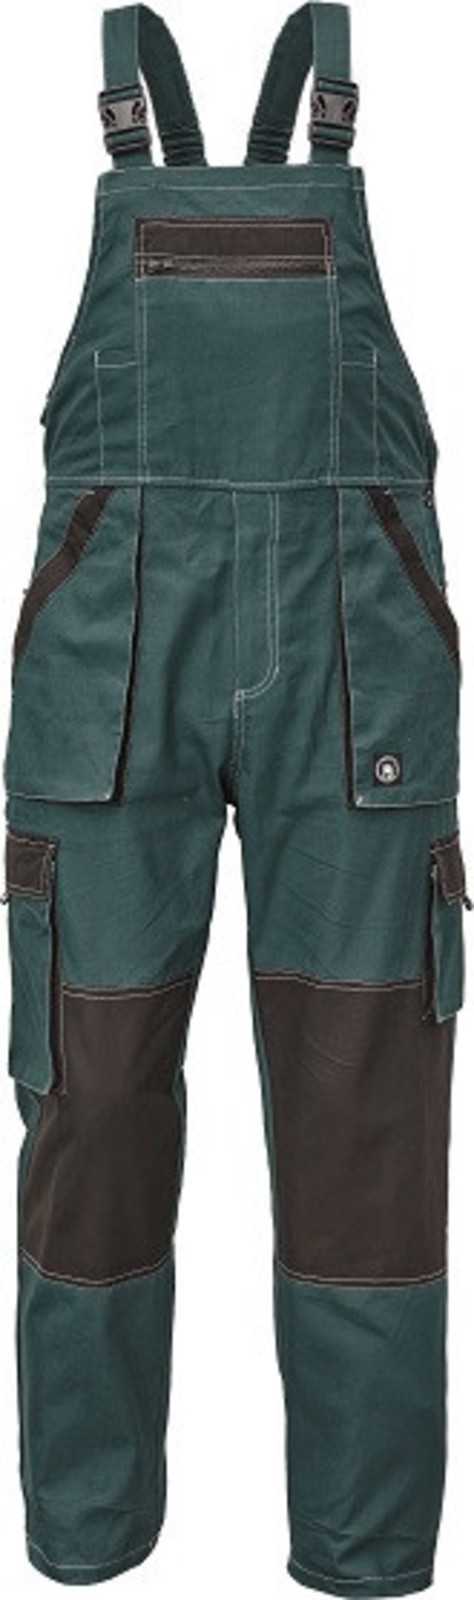 Tenšie bavlnené montérky na traky Max Summer - veľkosť: 54, farba: zelená/čierna